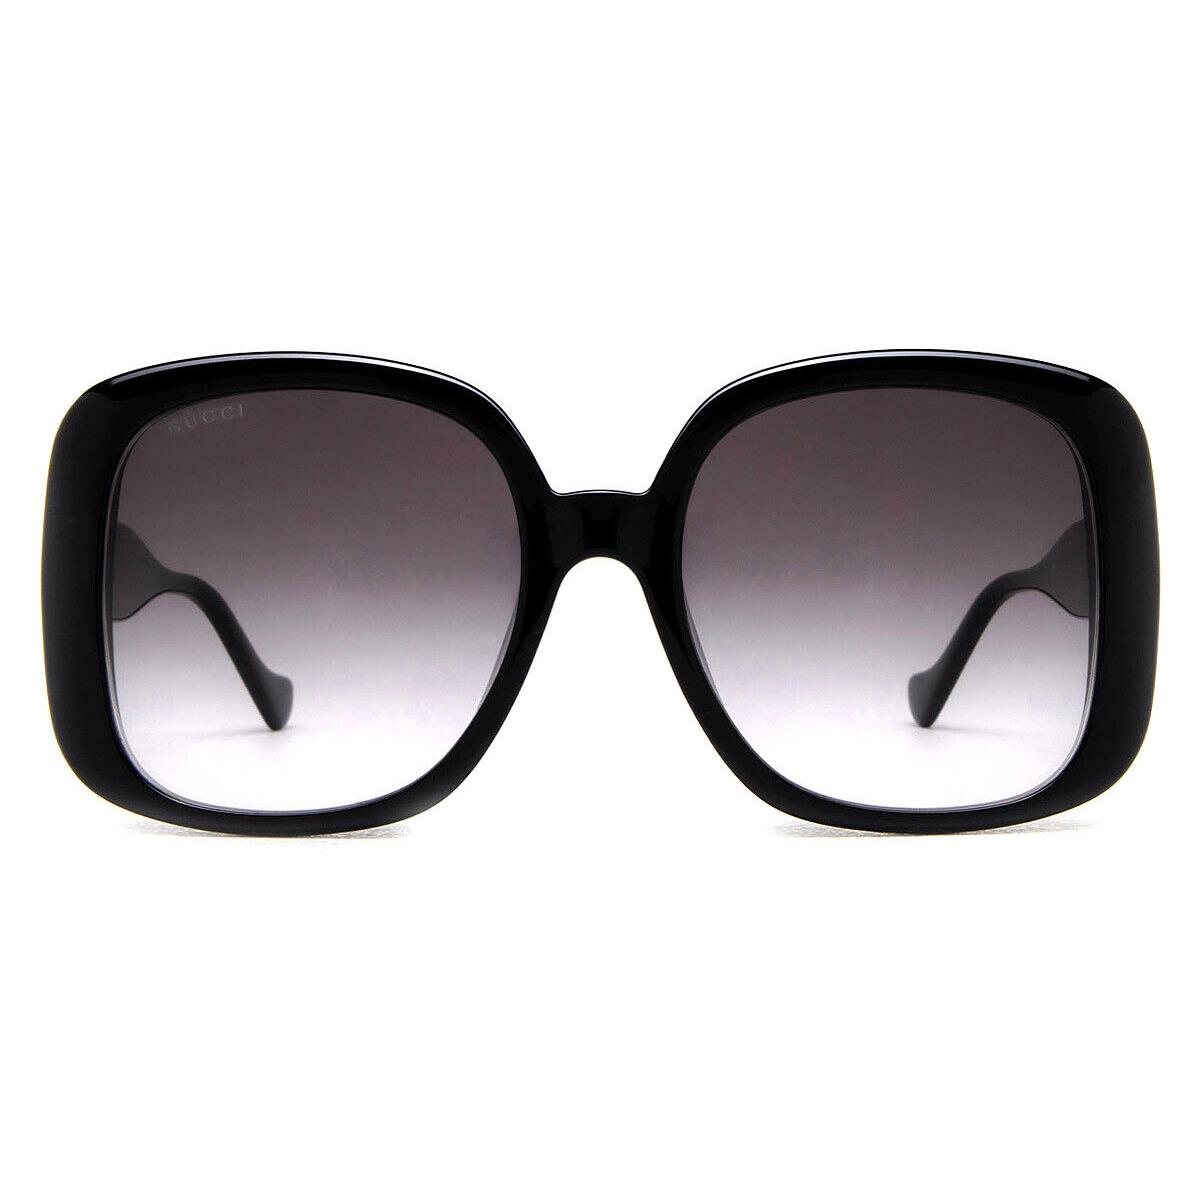 Gucci GG1029SA Sunglasses Women Black / Gray Gradient Round 57mm